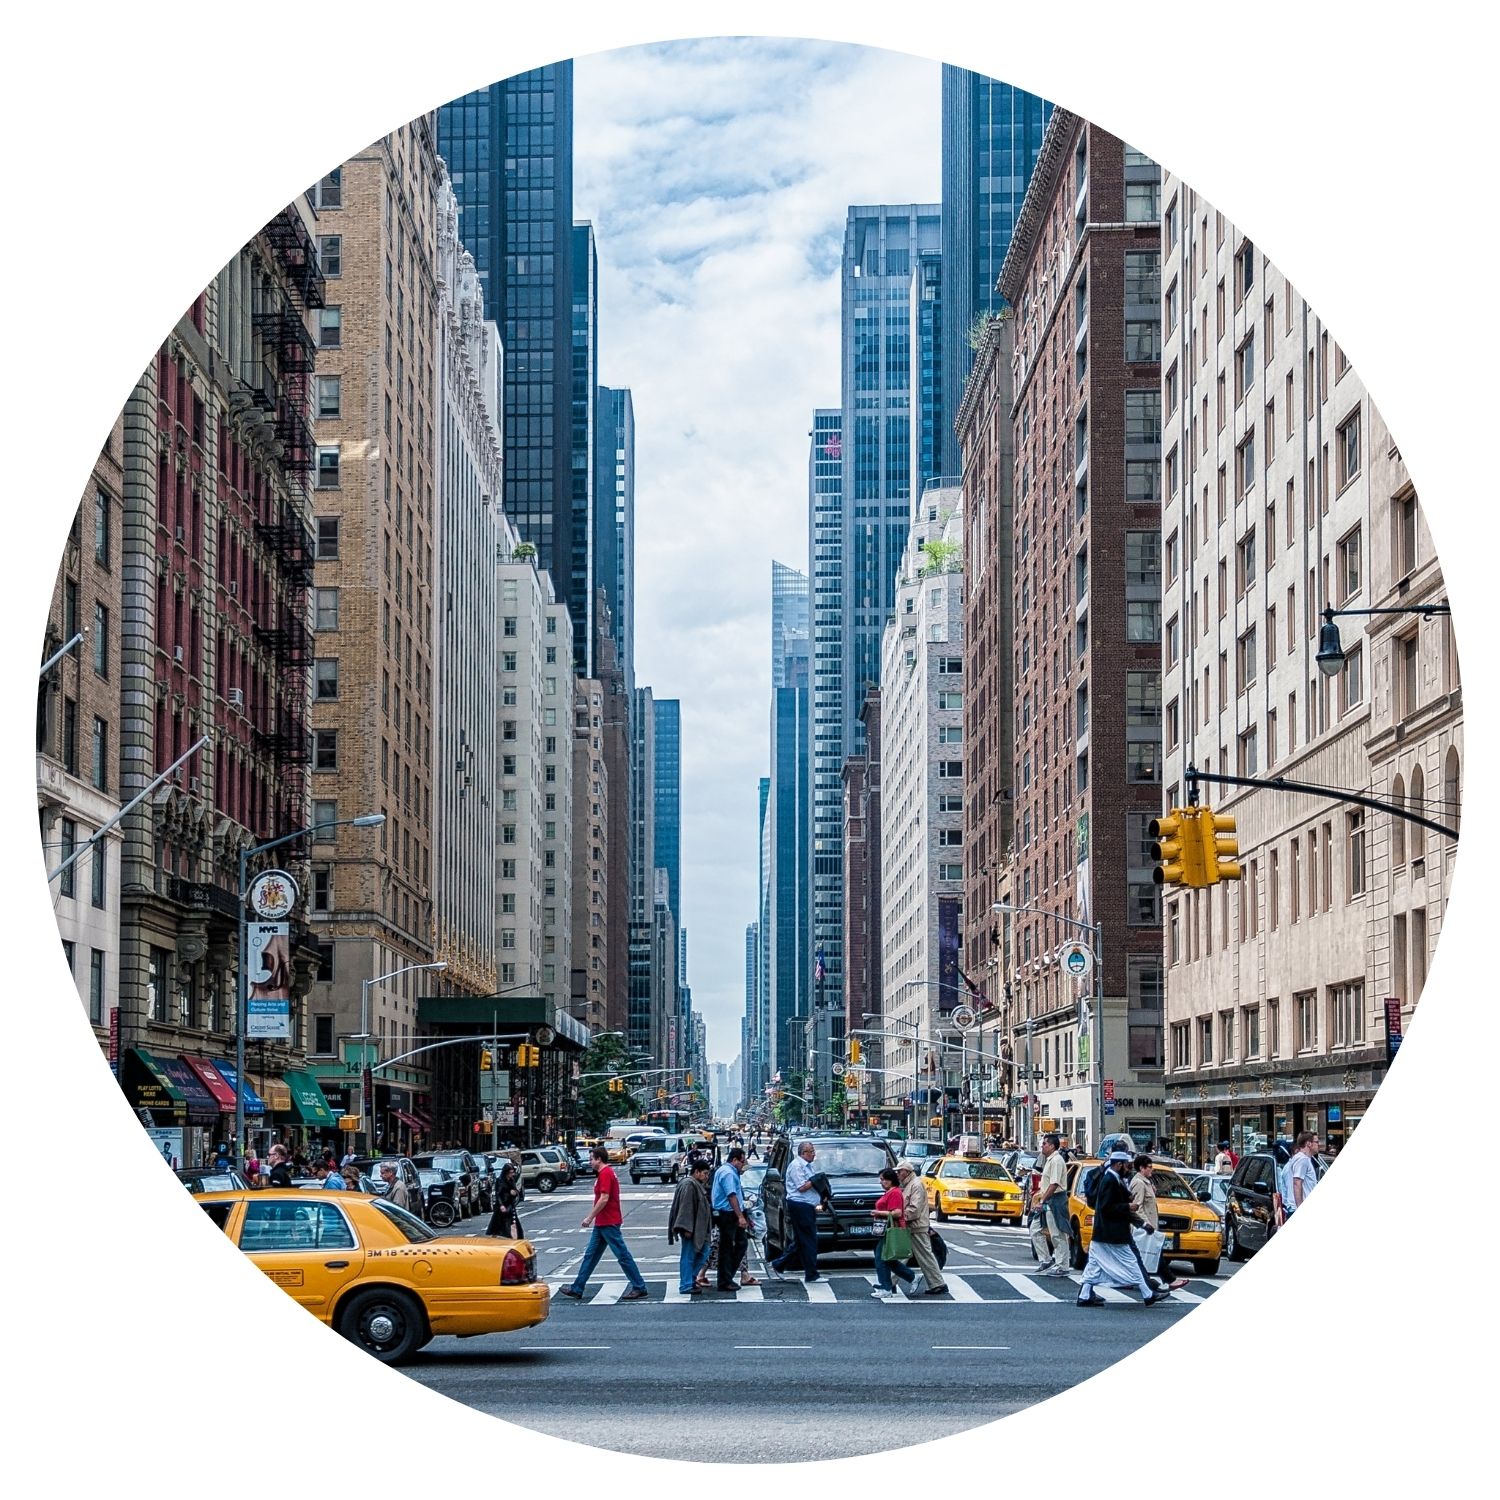 Une scène animée de New York avec des passants, des taxis jaunes emblématiques et des gratte-ciels imposants en arrière-plan.